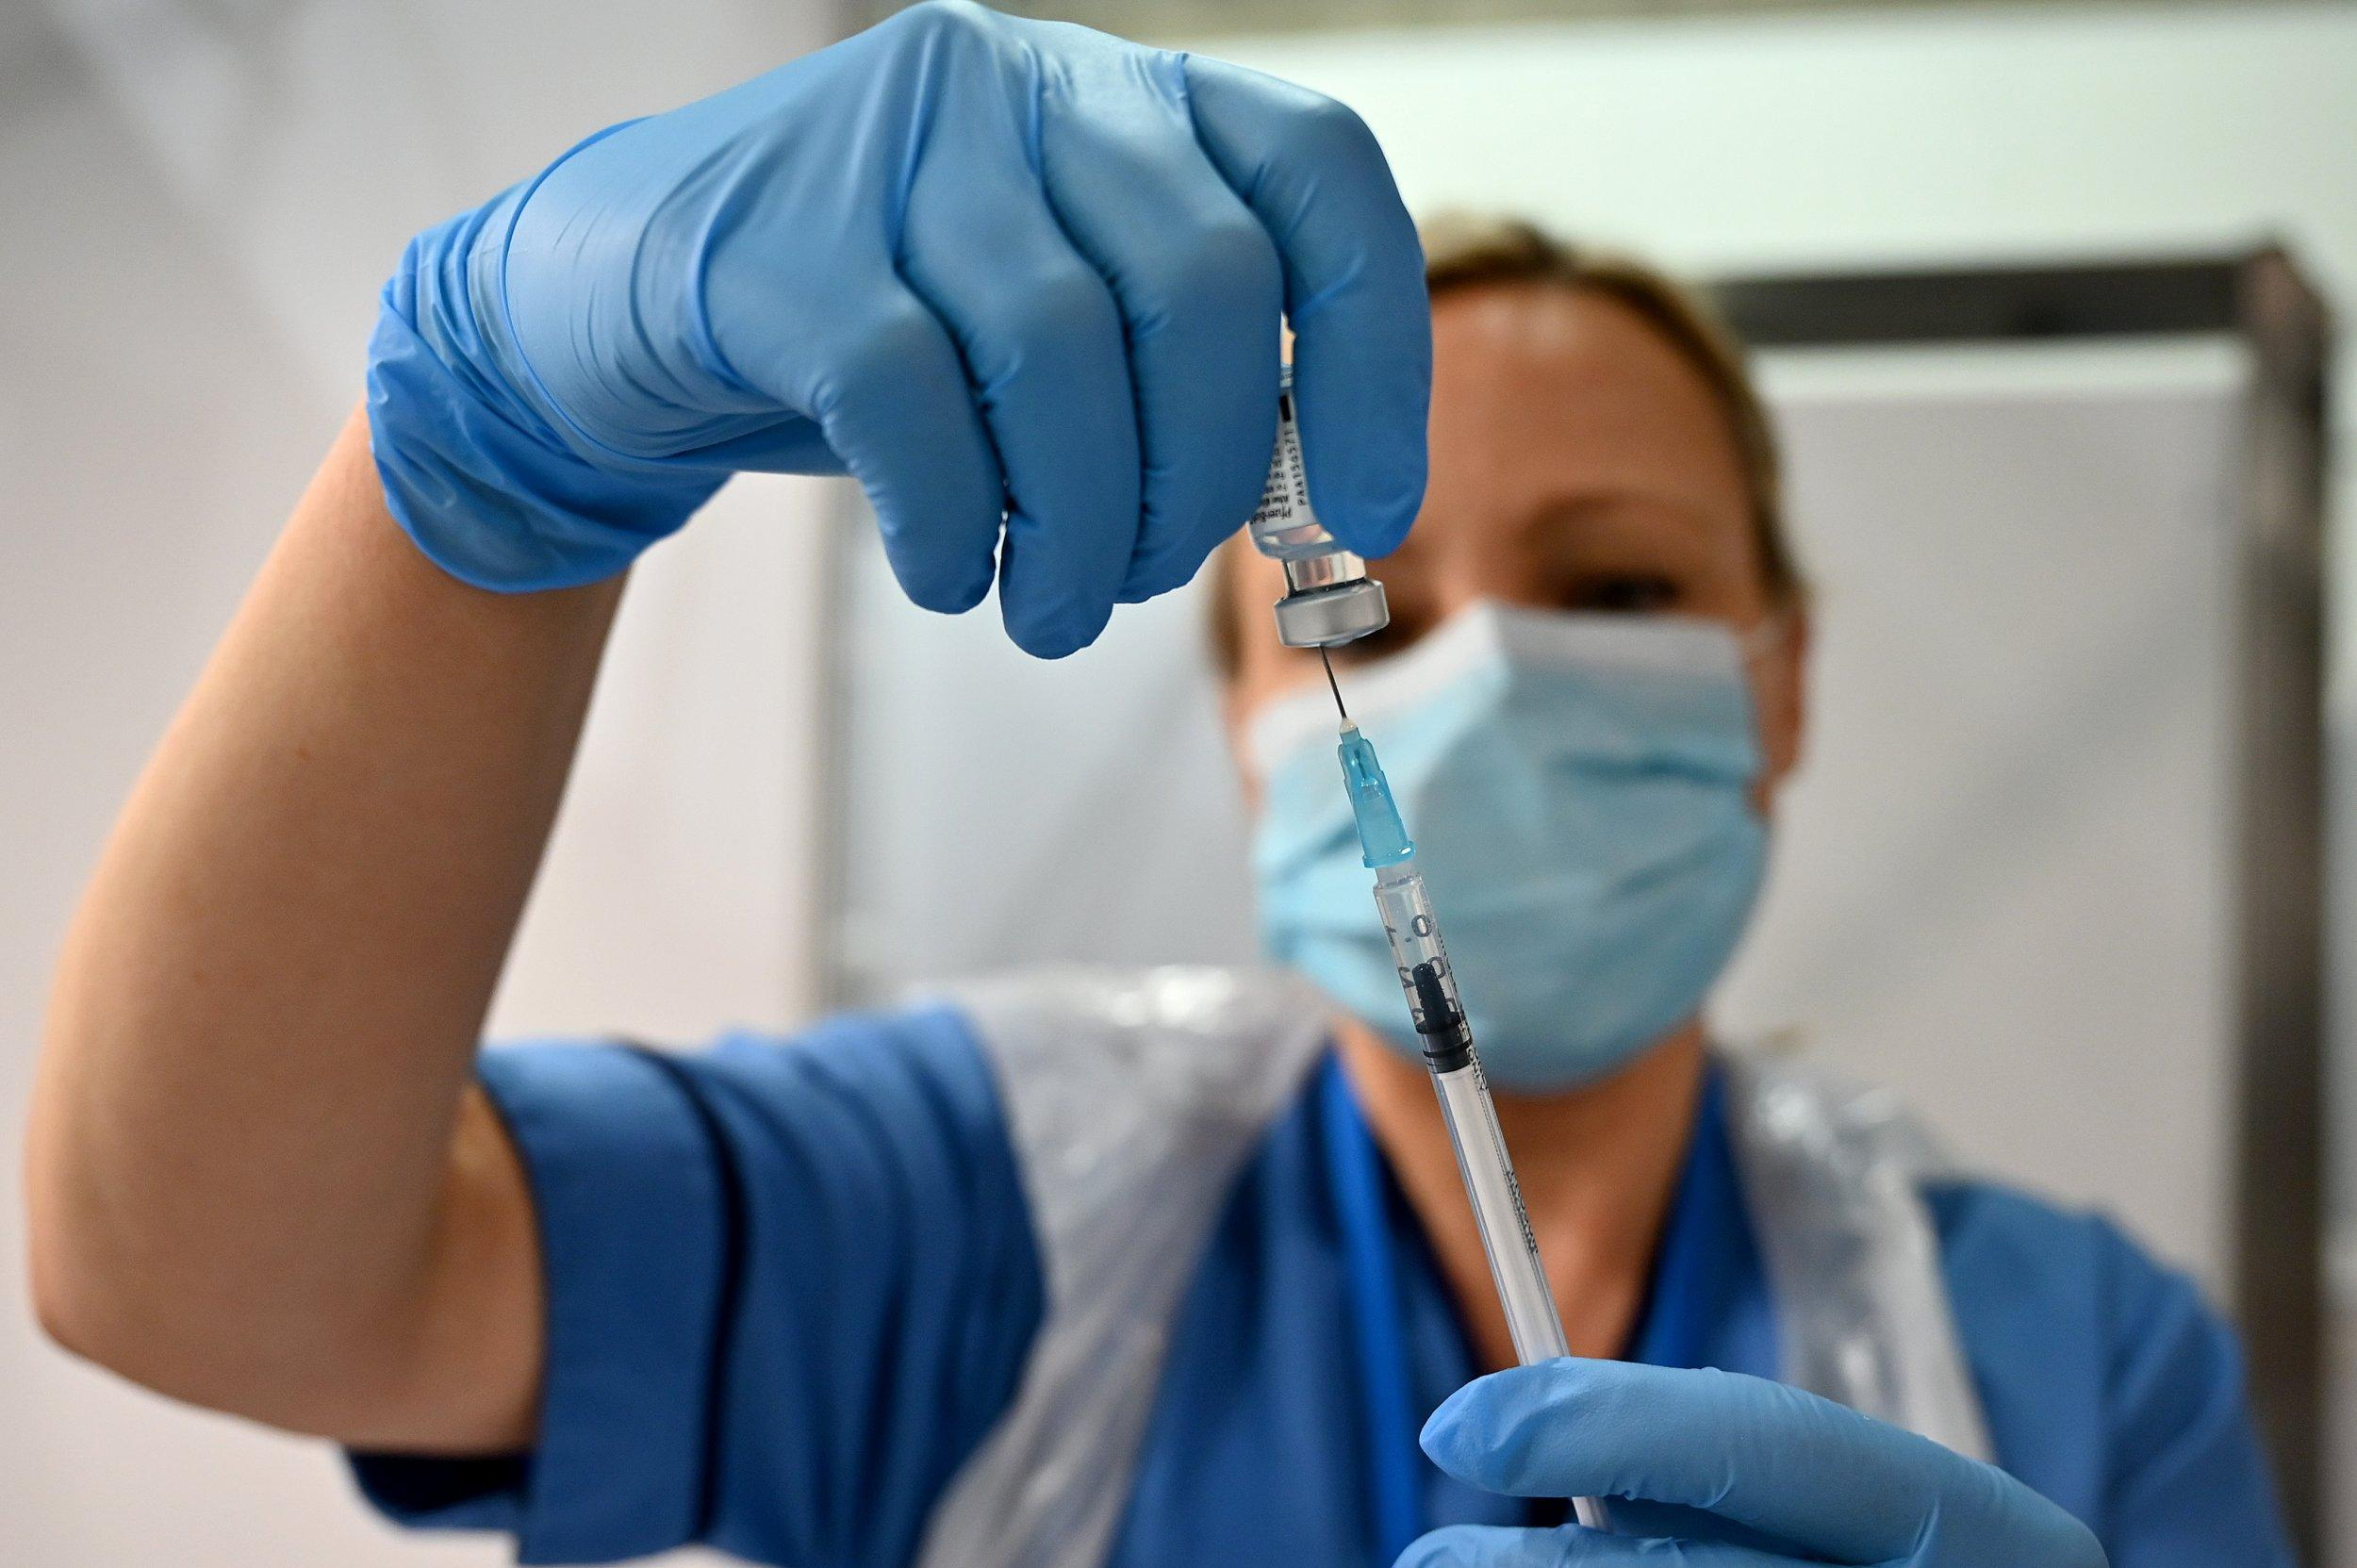 Наявність вакцини від COVID-19 у пункті щеплення можна перевірити через чат-бот - Україна новини - Новини Здоров’я